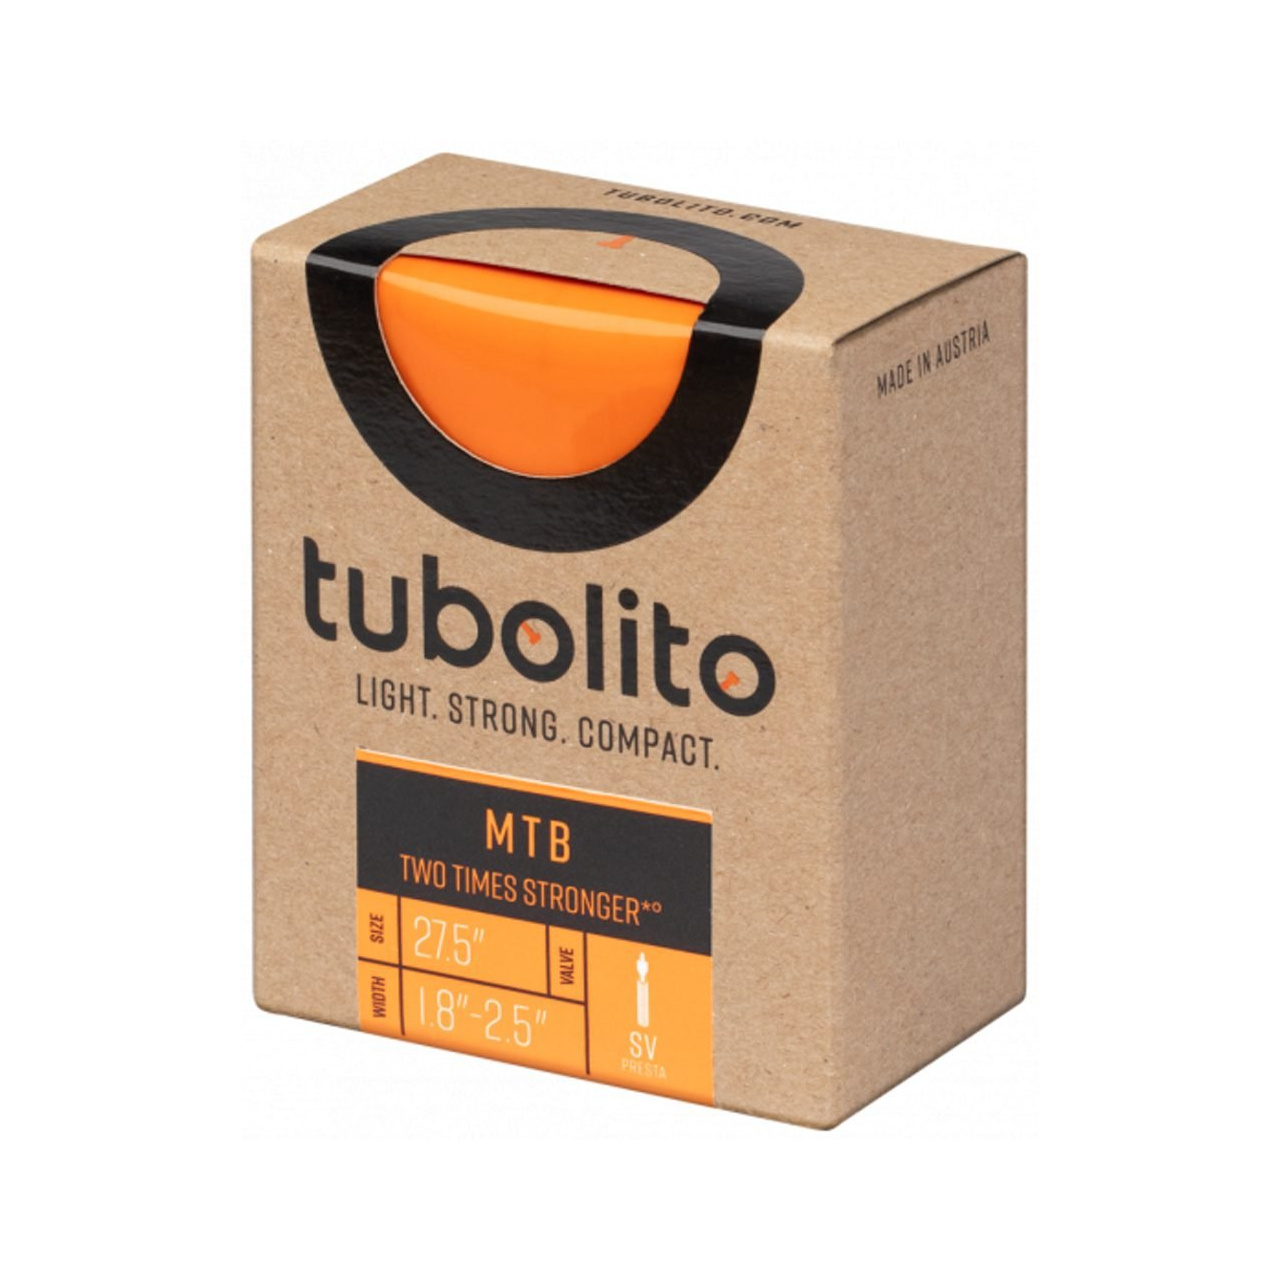 Tubolito MTB 27,5x1,8-2,5 SV42